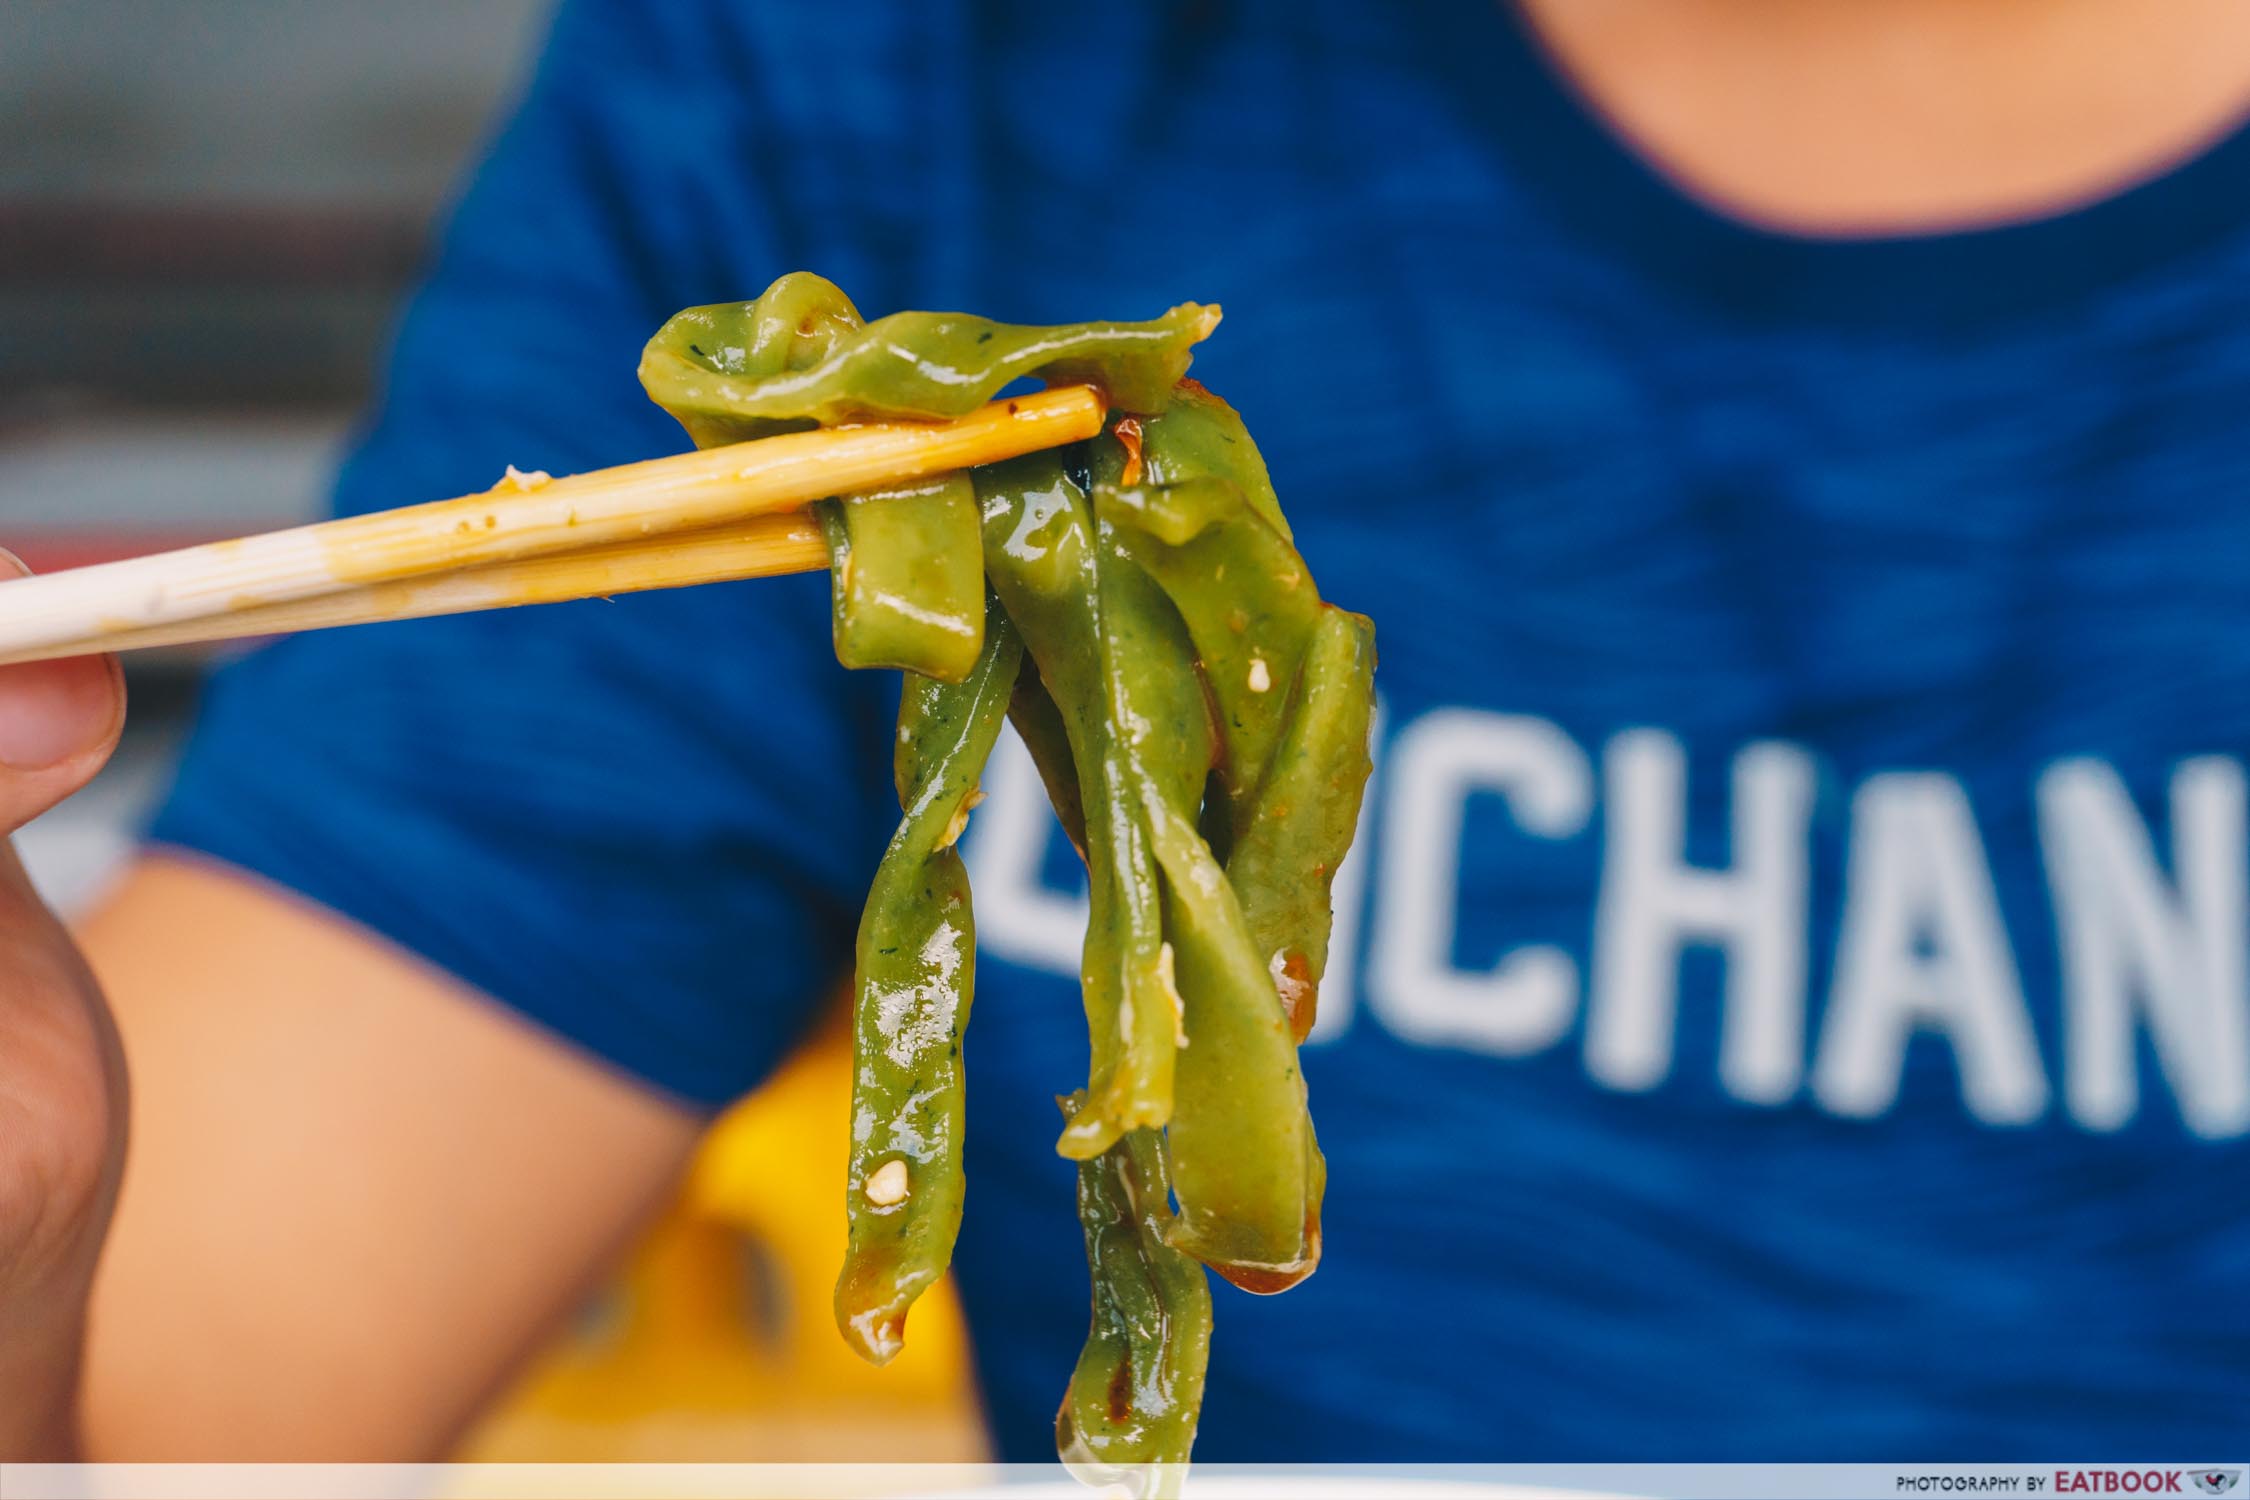 Yue Lai Xiang Spinach Banmian Closeup